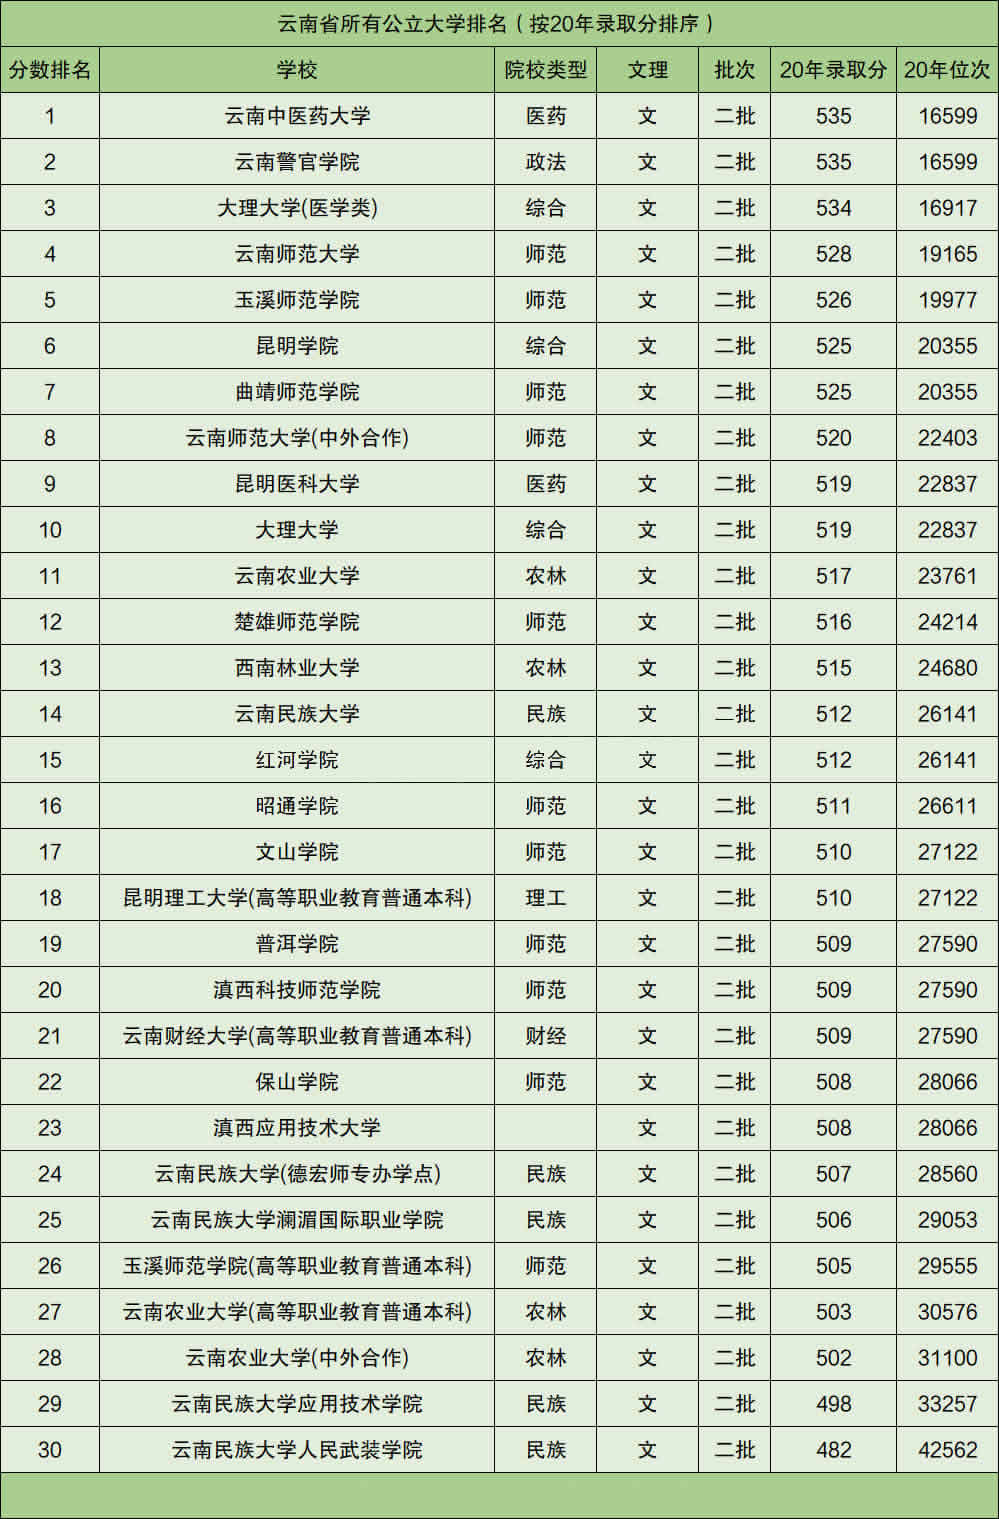 2、我国最穷的十个省排名:中国最穷的十省?